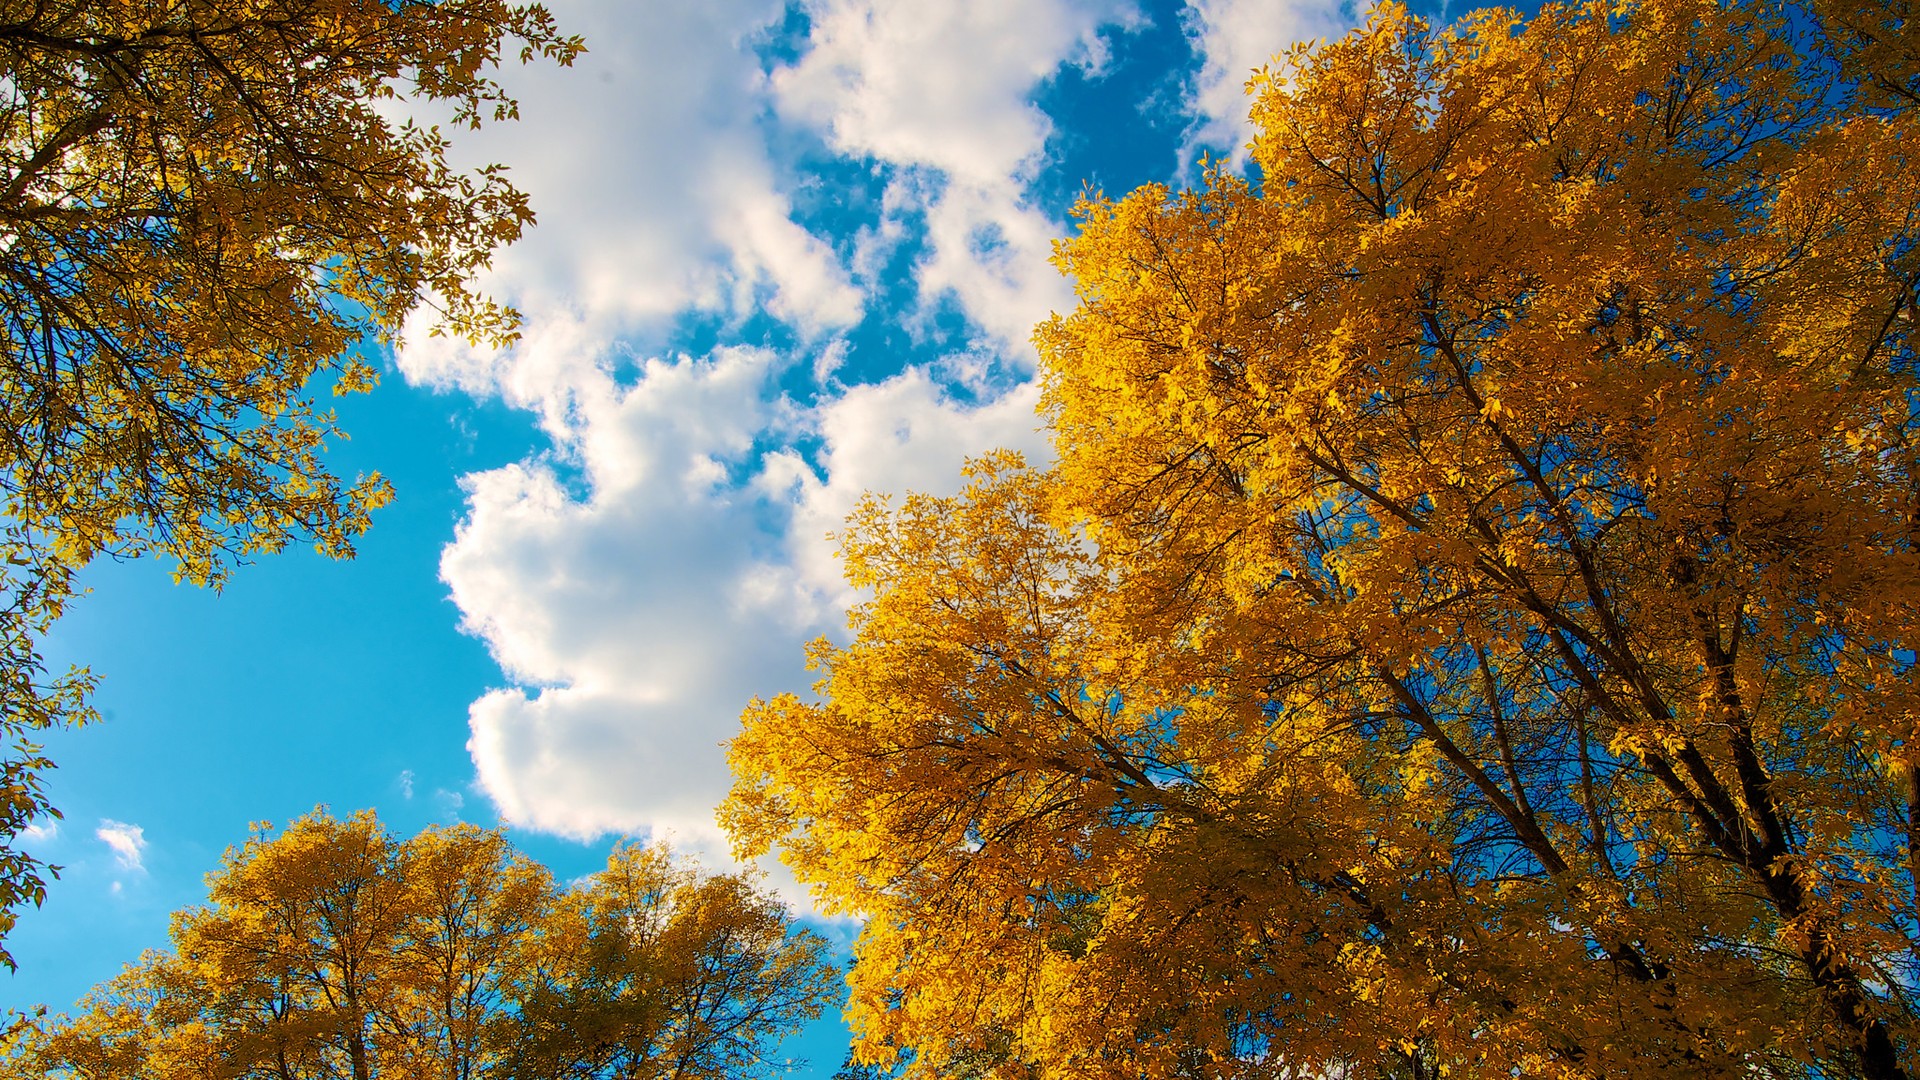 秋天的天空 云 树 树叶 自然风景壁纸 风景壁纸 壁纸下载 彼岸桌面